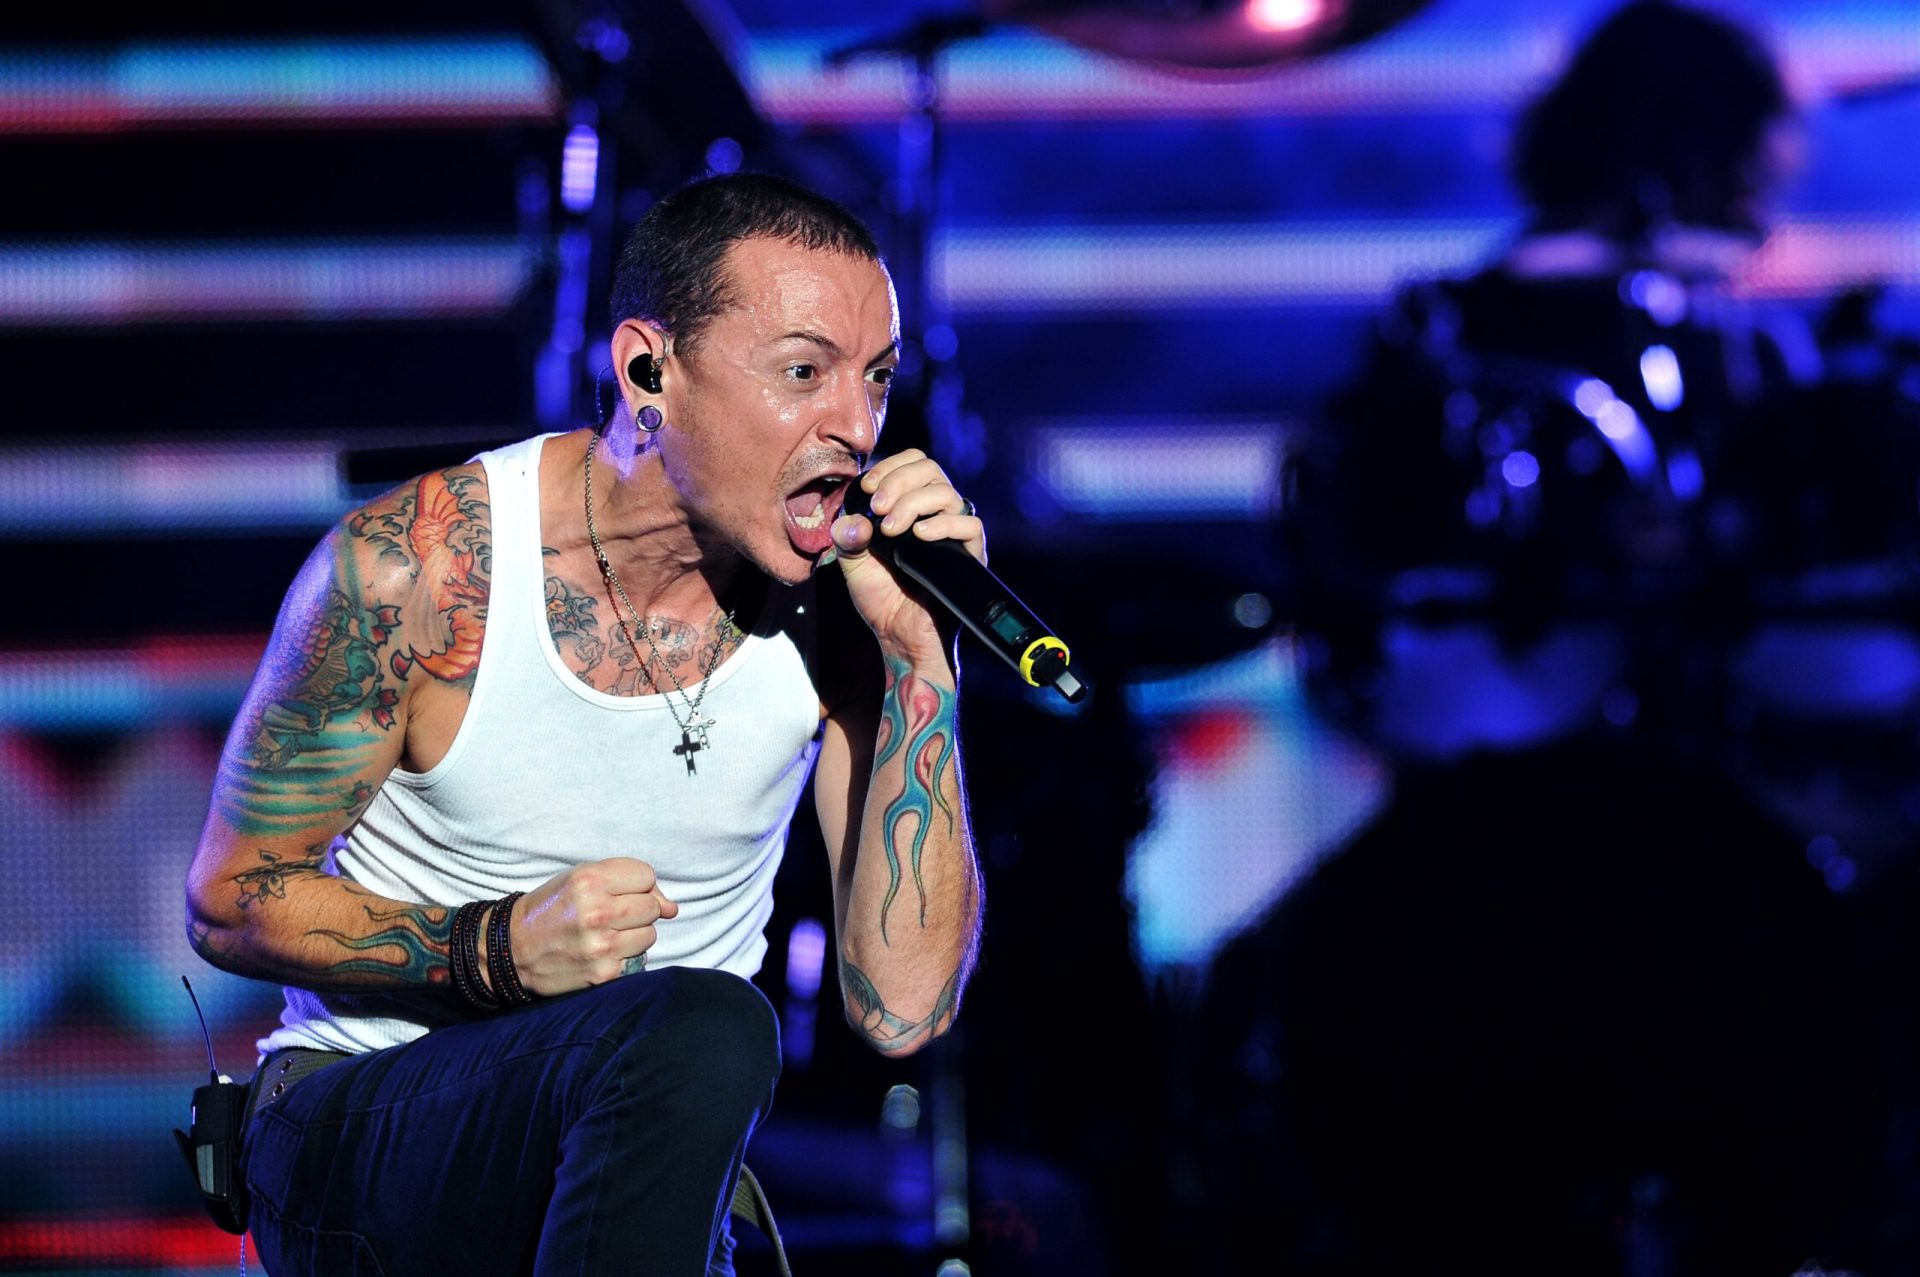 Morreu o vocalista dos Linkin Park